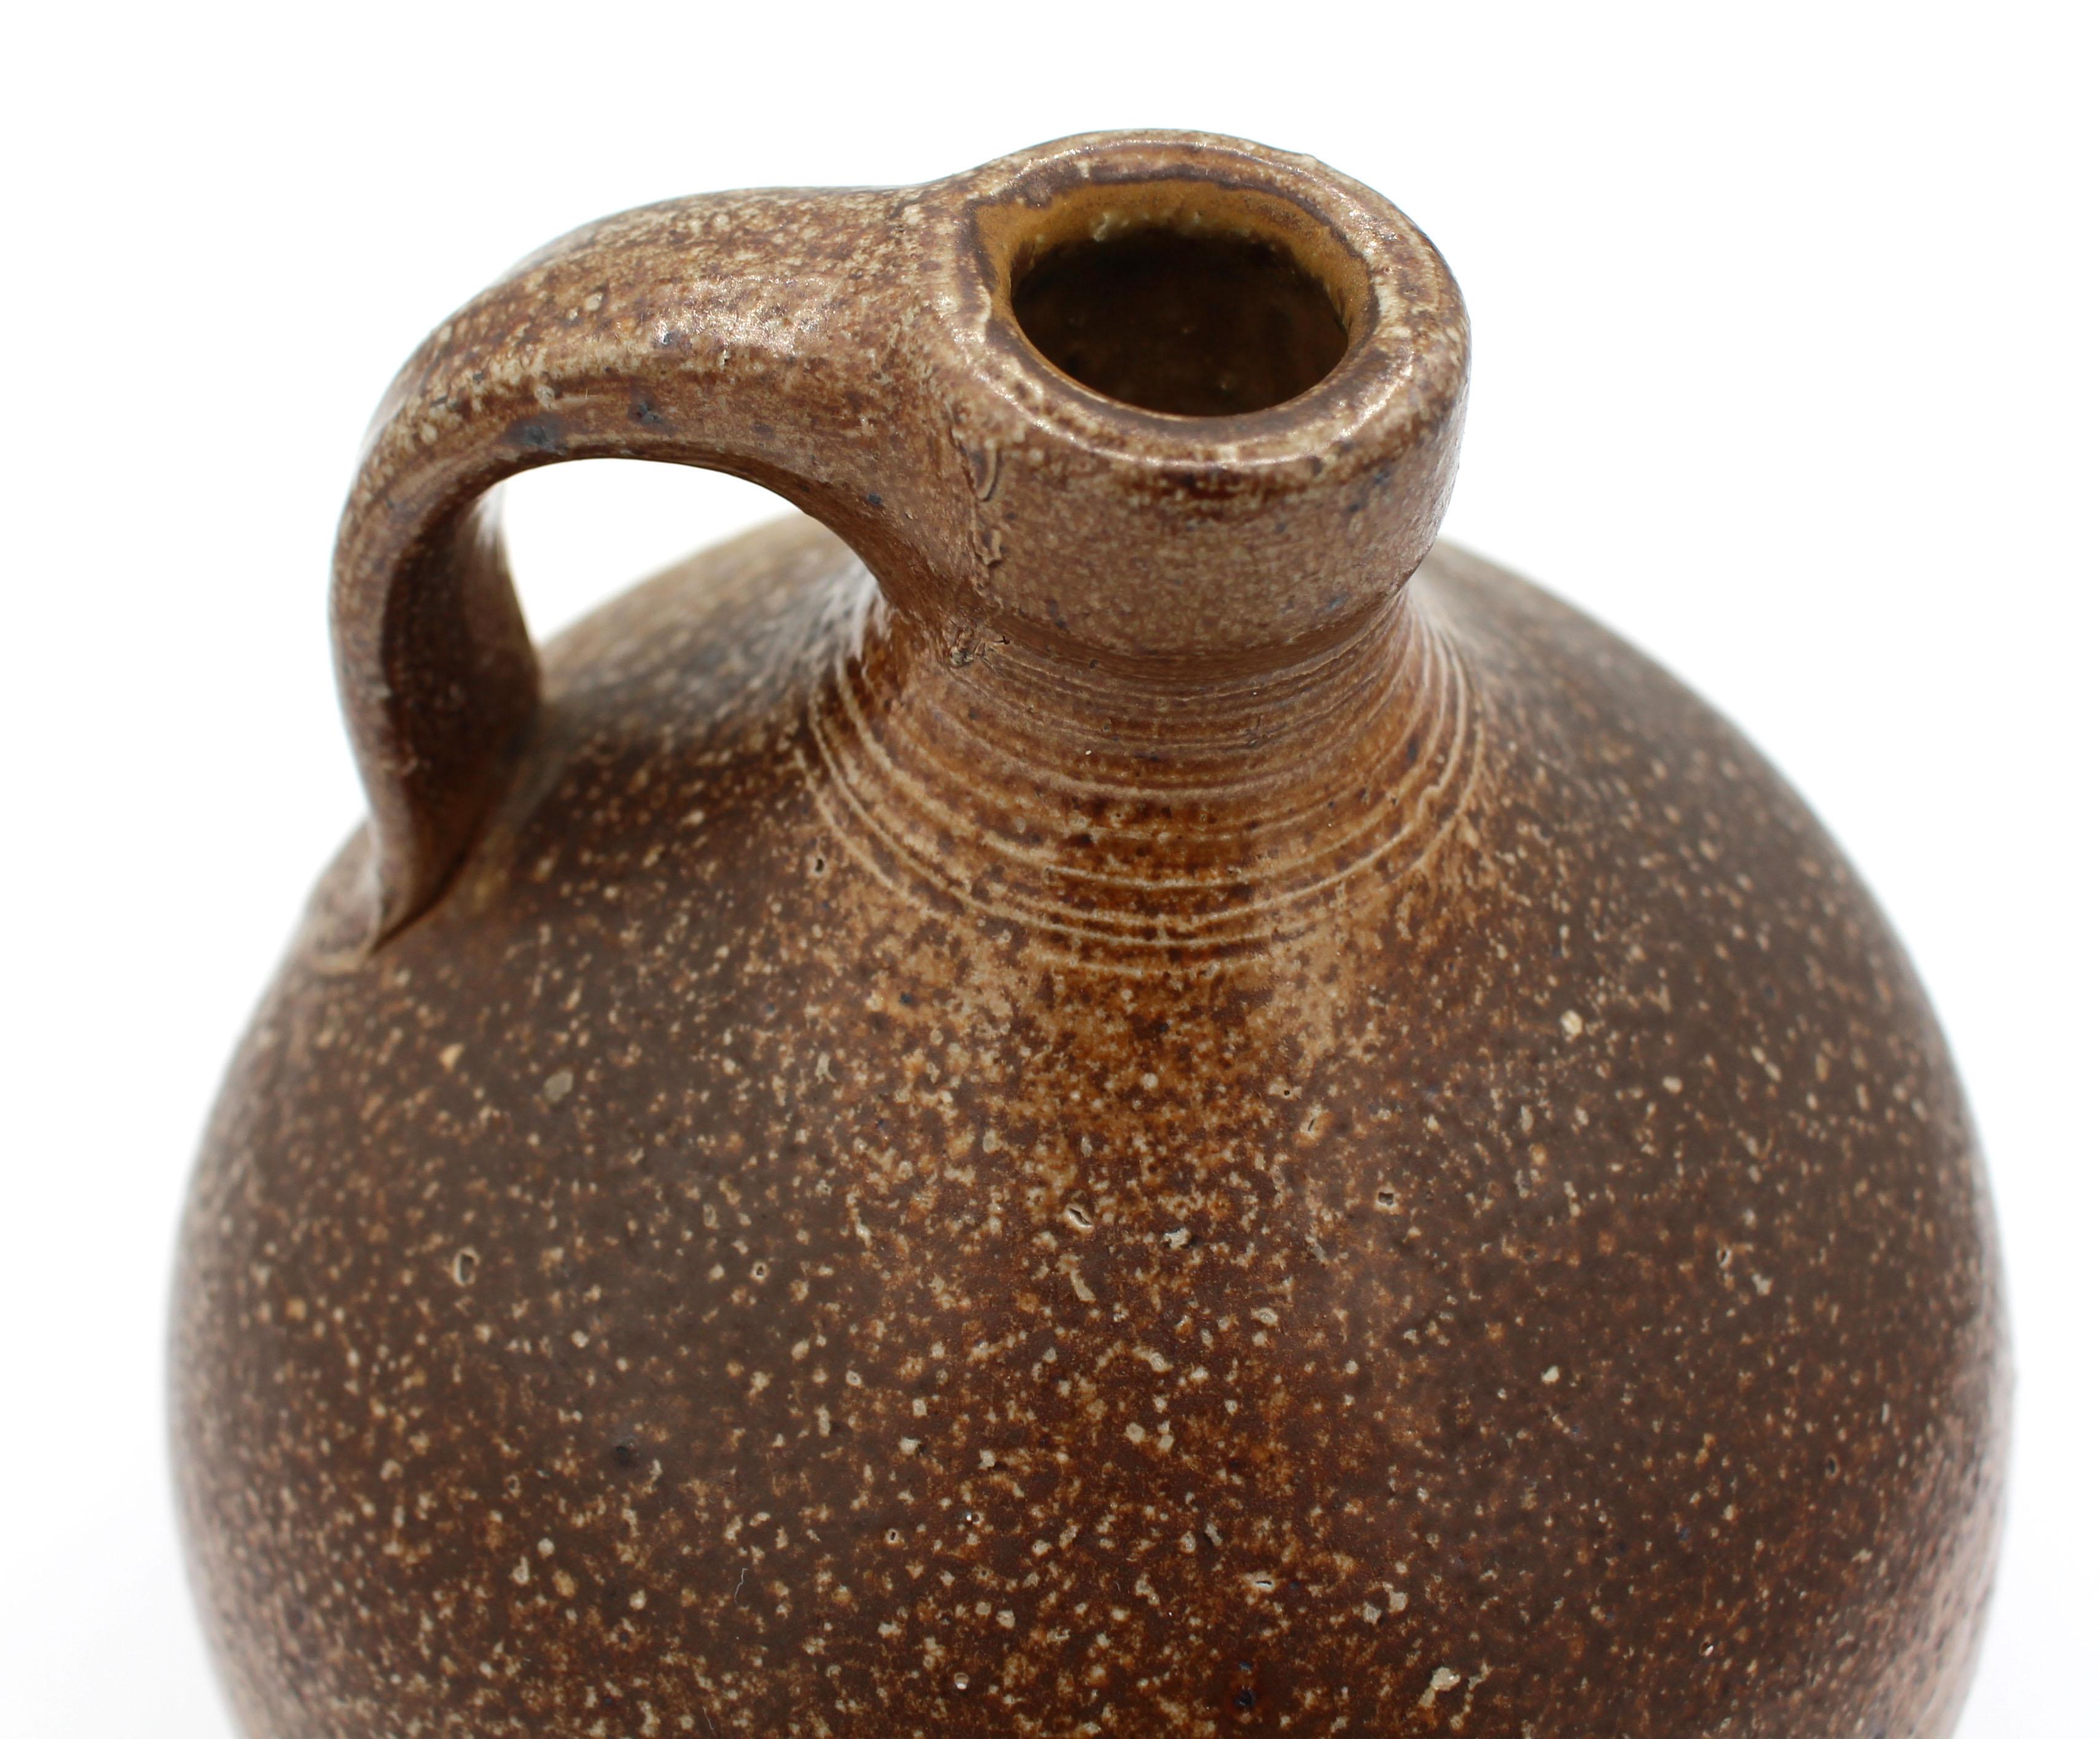 1984-1995 Speckled Brown Mark Hewitt Pottery Jug For Sale 1